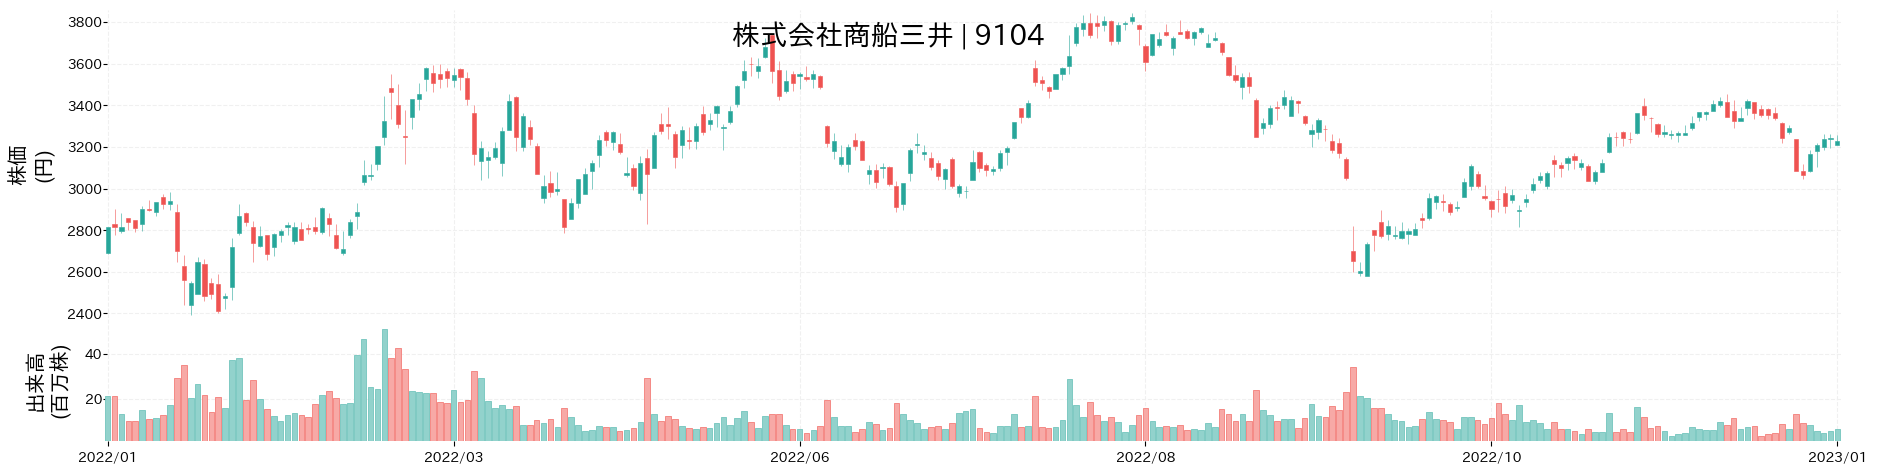 商船三井の株価推移(2022)